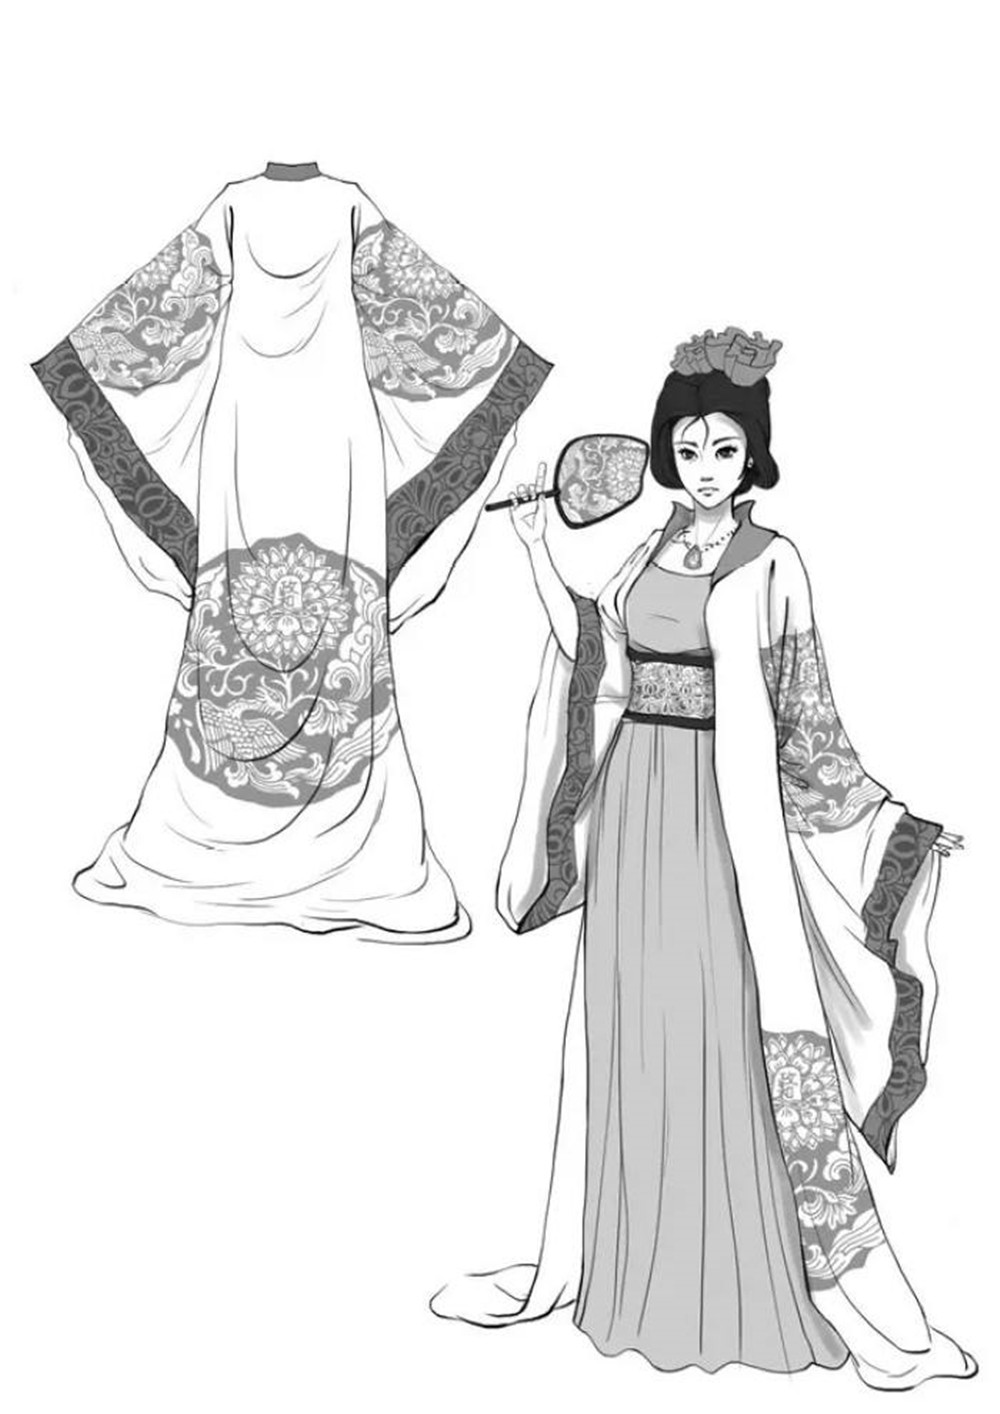 大唐文明史,你知道唐装不是大唐时期的衣服吗